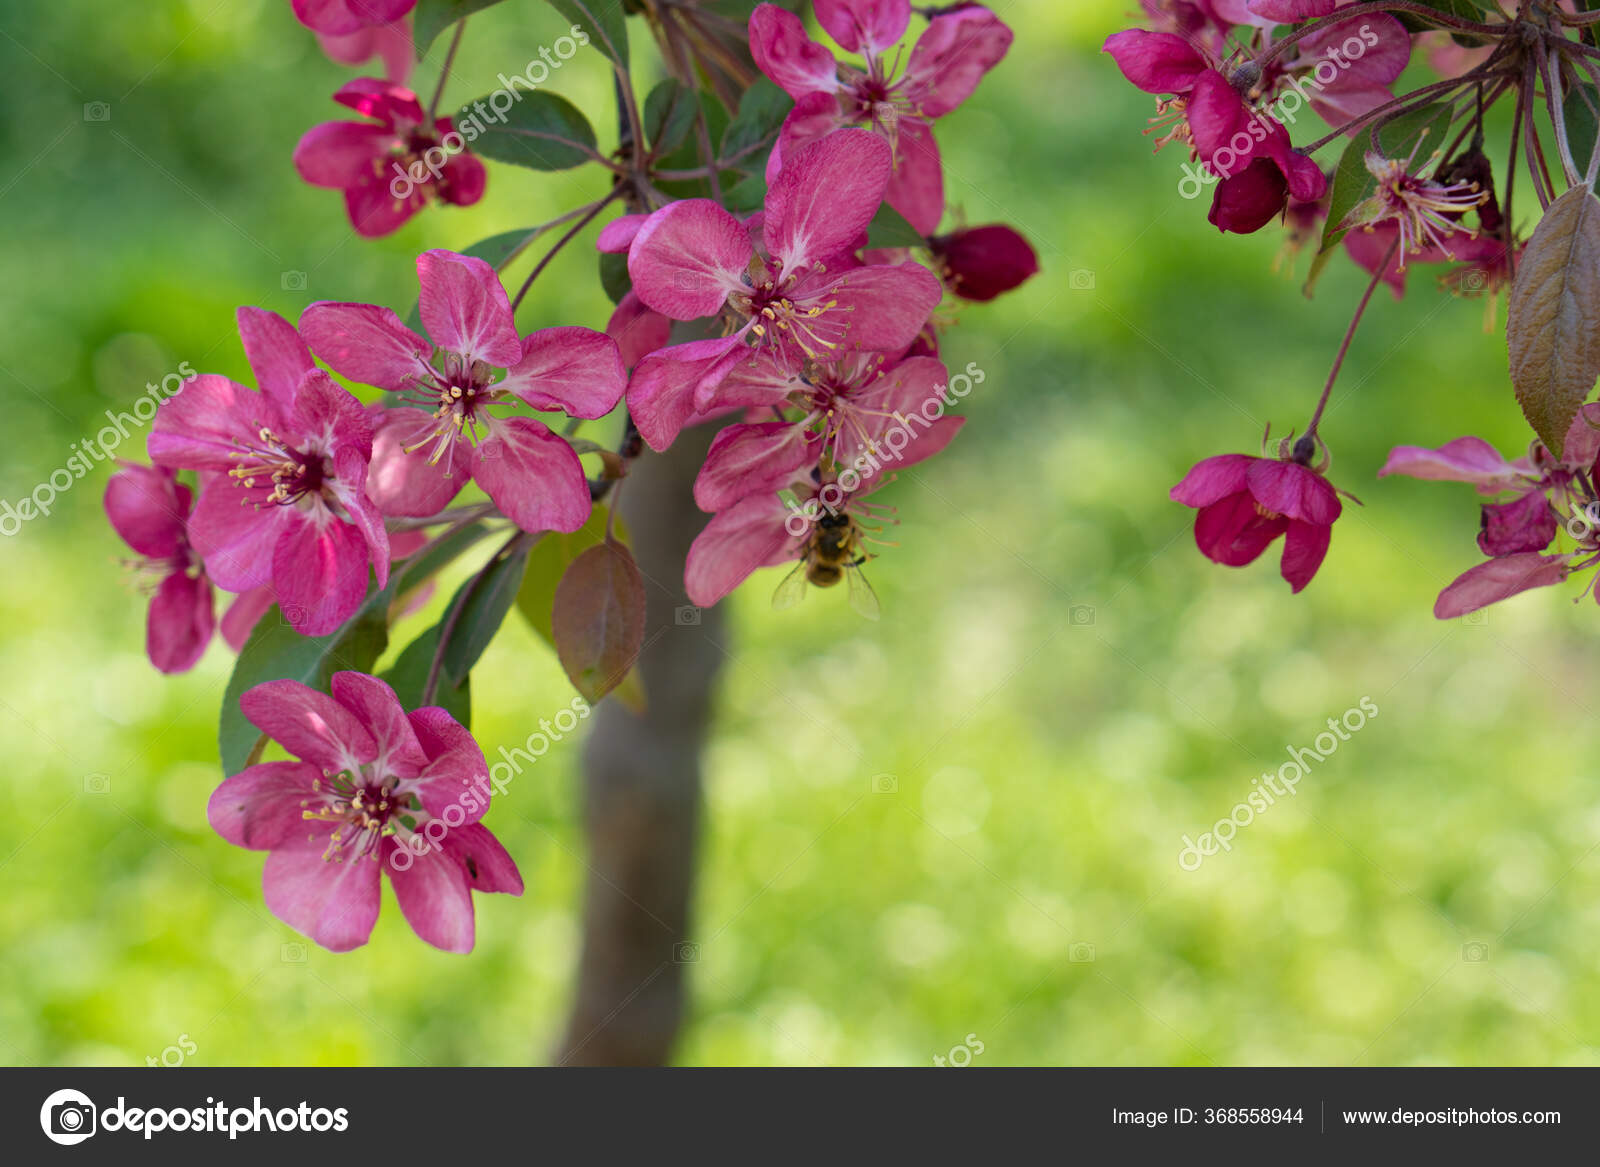 Flor de manzana de color rosa. Los árboles están